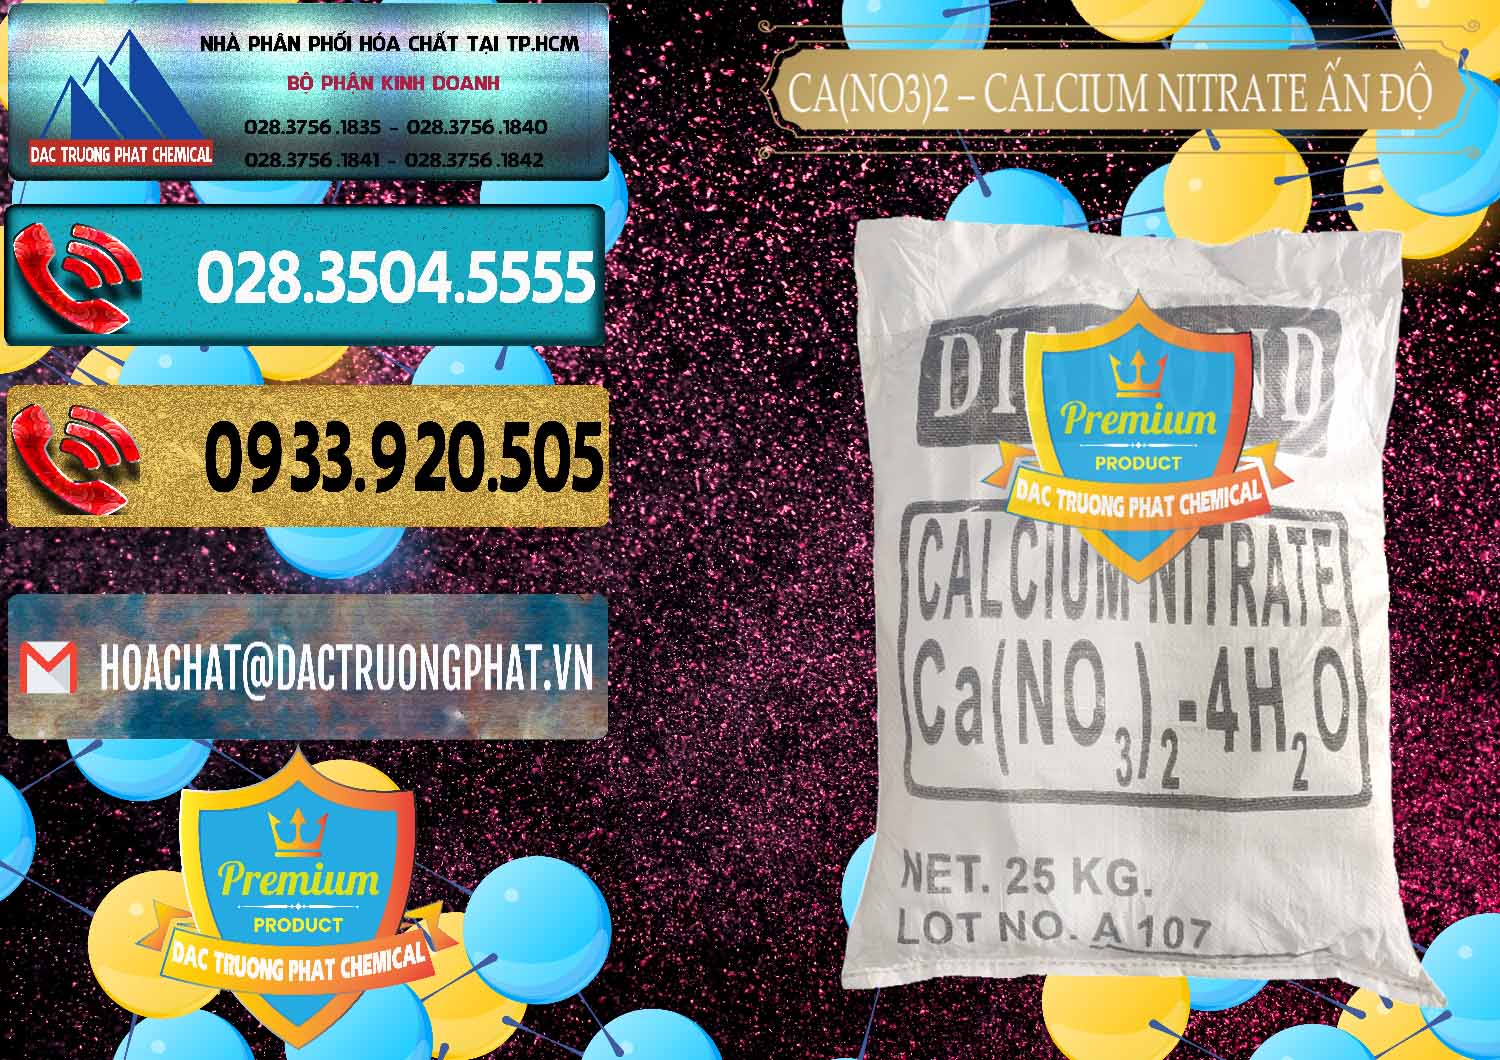 Chuyên phân phối & bán CA(NO3)2 – Calcium Nitrate Ấn Độ India - 0038 - Chuyên cung cấp _ phân phối hóa chất tại TP.HCM - hoachatdetnhuom.com